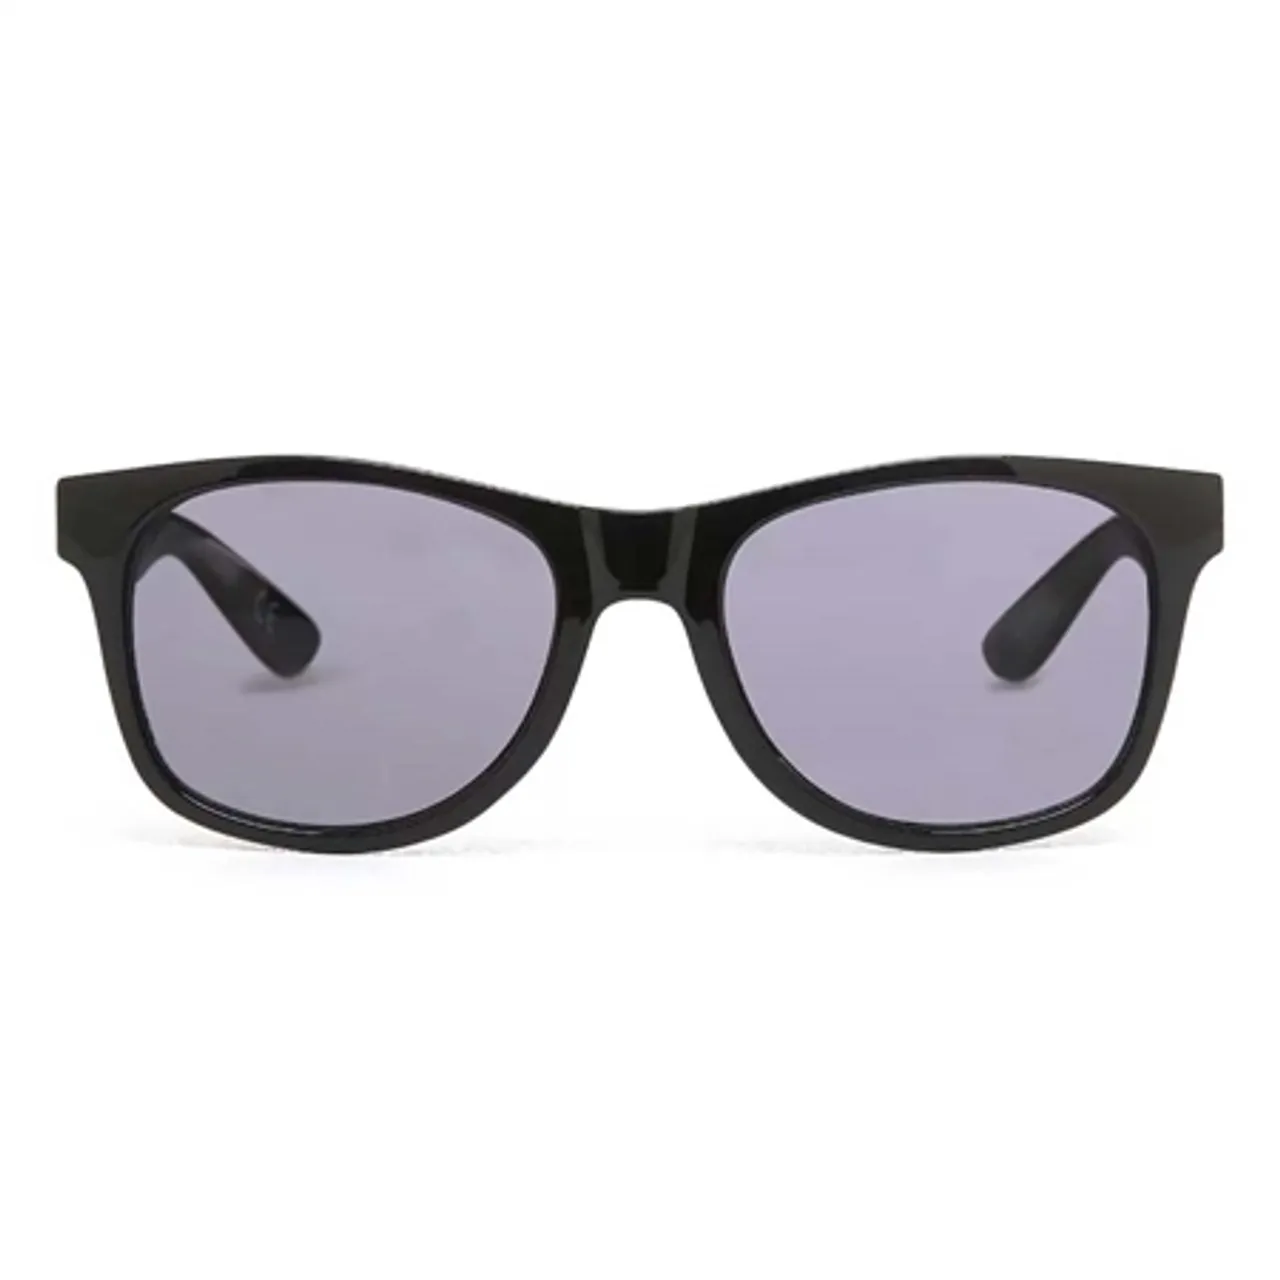 Vans Spicoli 4 Shades Sunglasses - Black